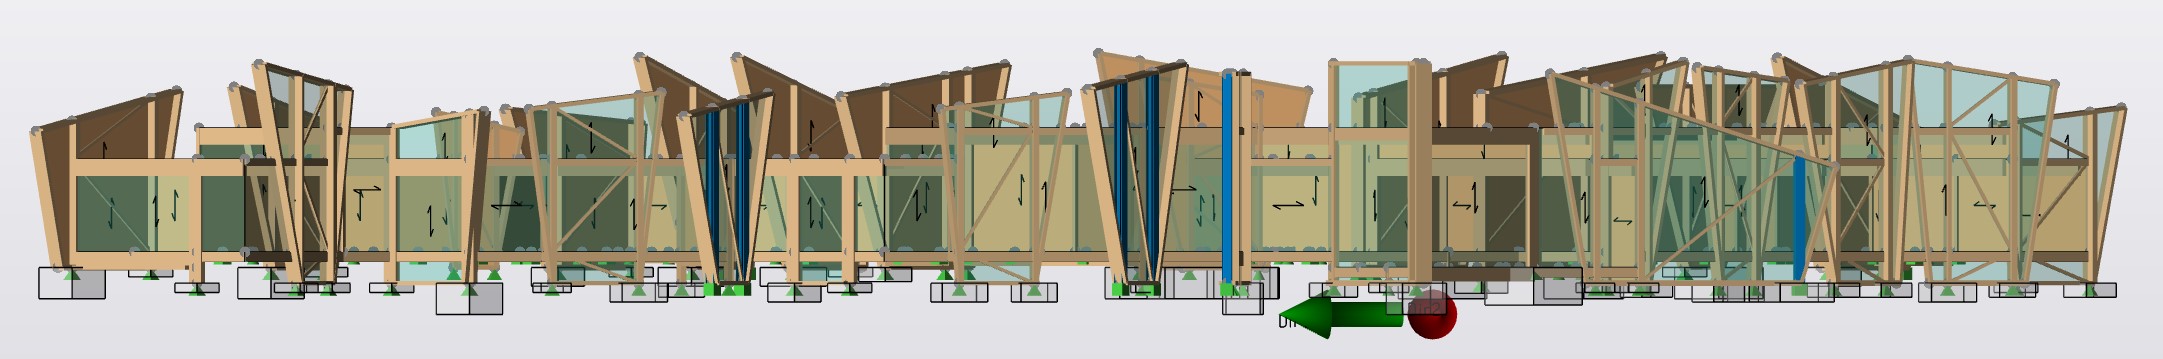 The Hux Shard, as modelled in Tekla Structural Designer